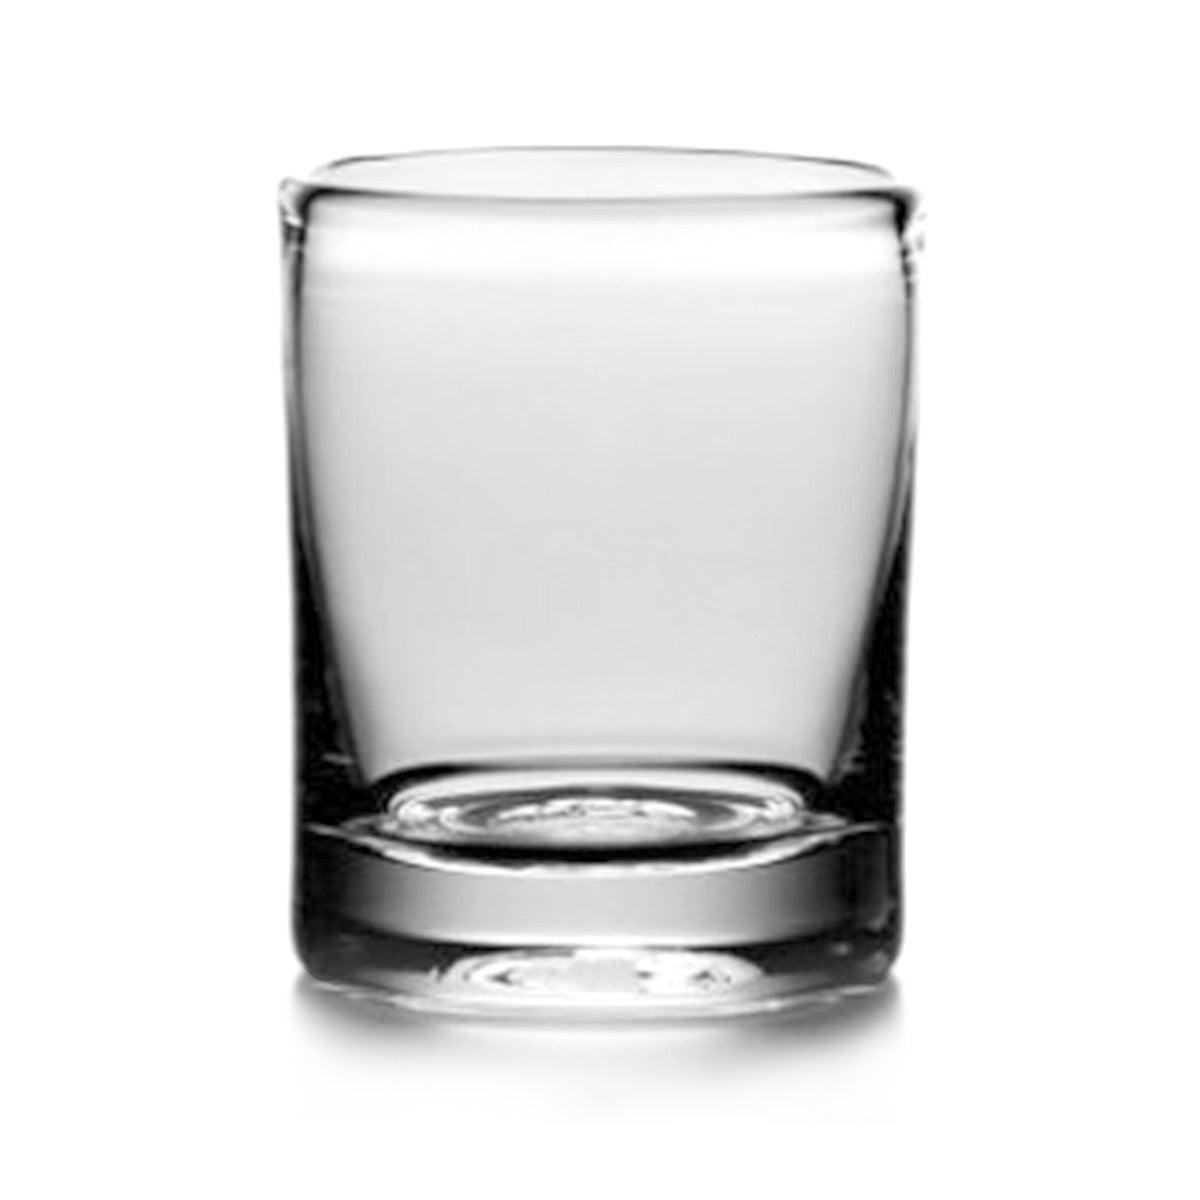 Ascutney Whiskey Glass